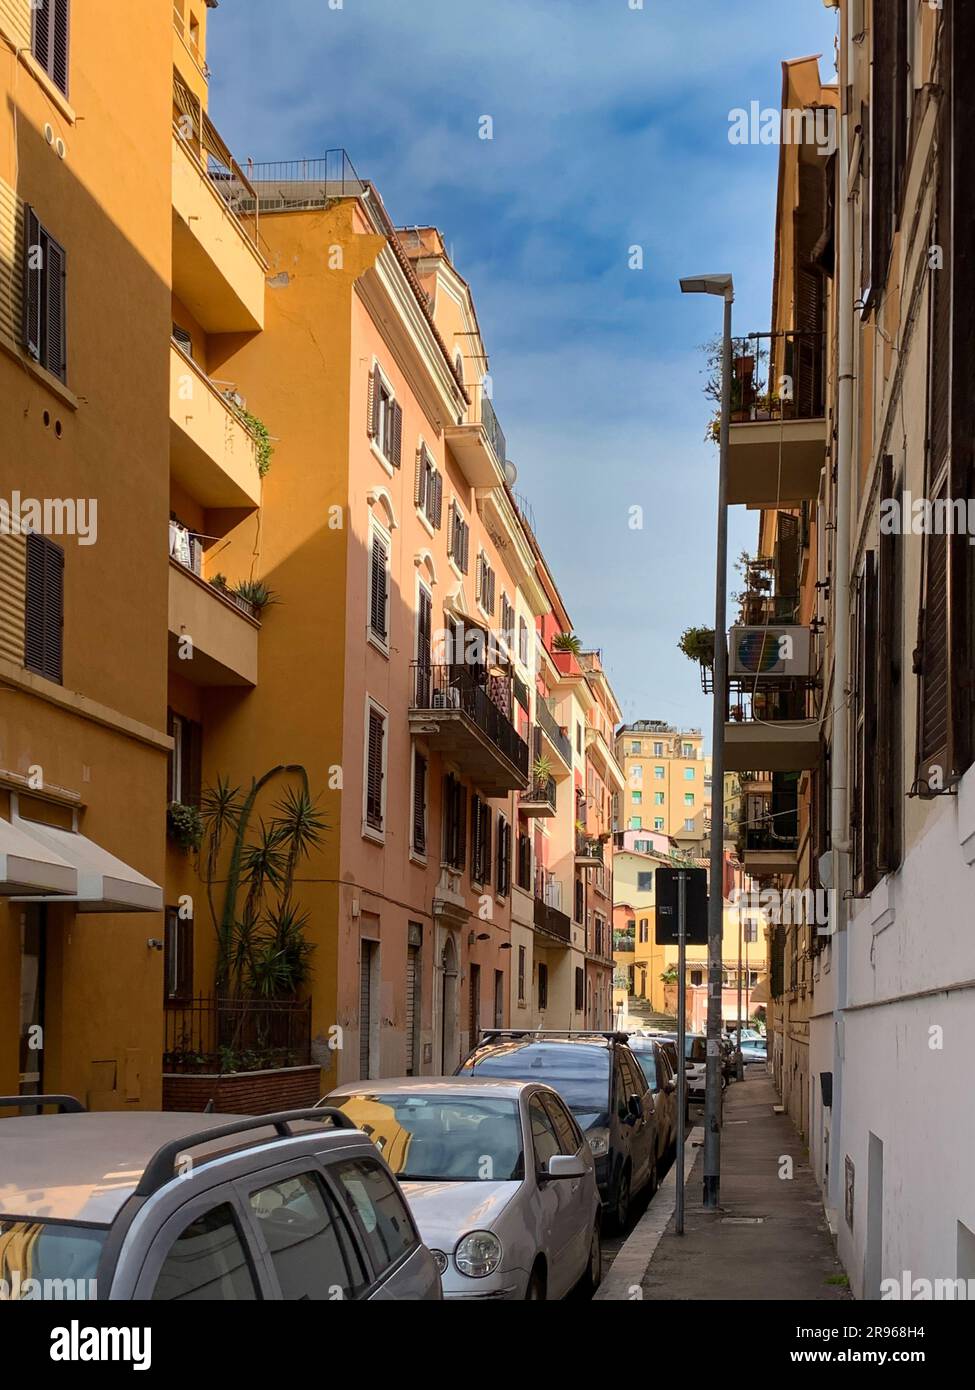 Un cliché vertical de la via dell'Argilla, une rue centrale de Rome, bordée de voitures garées et de bâtiments des deux côtés. La rue est dépourvue de personnes Banque D'Images